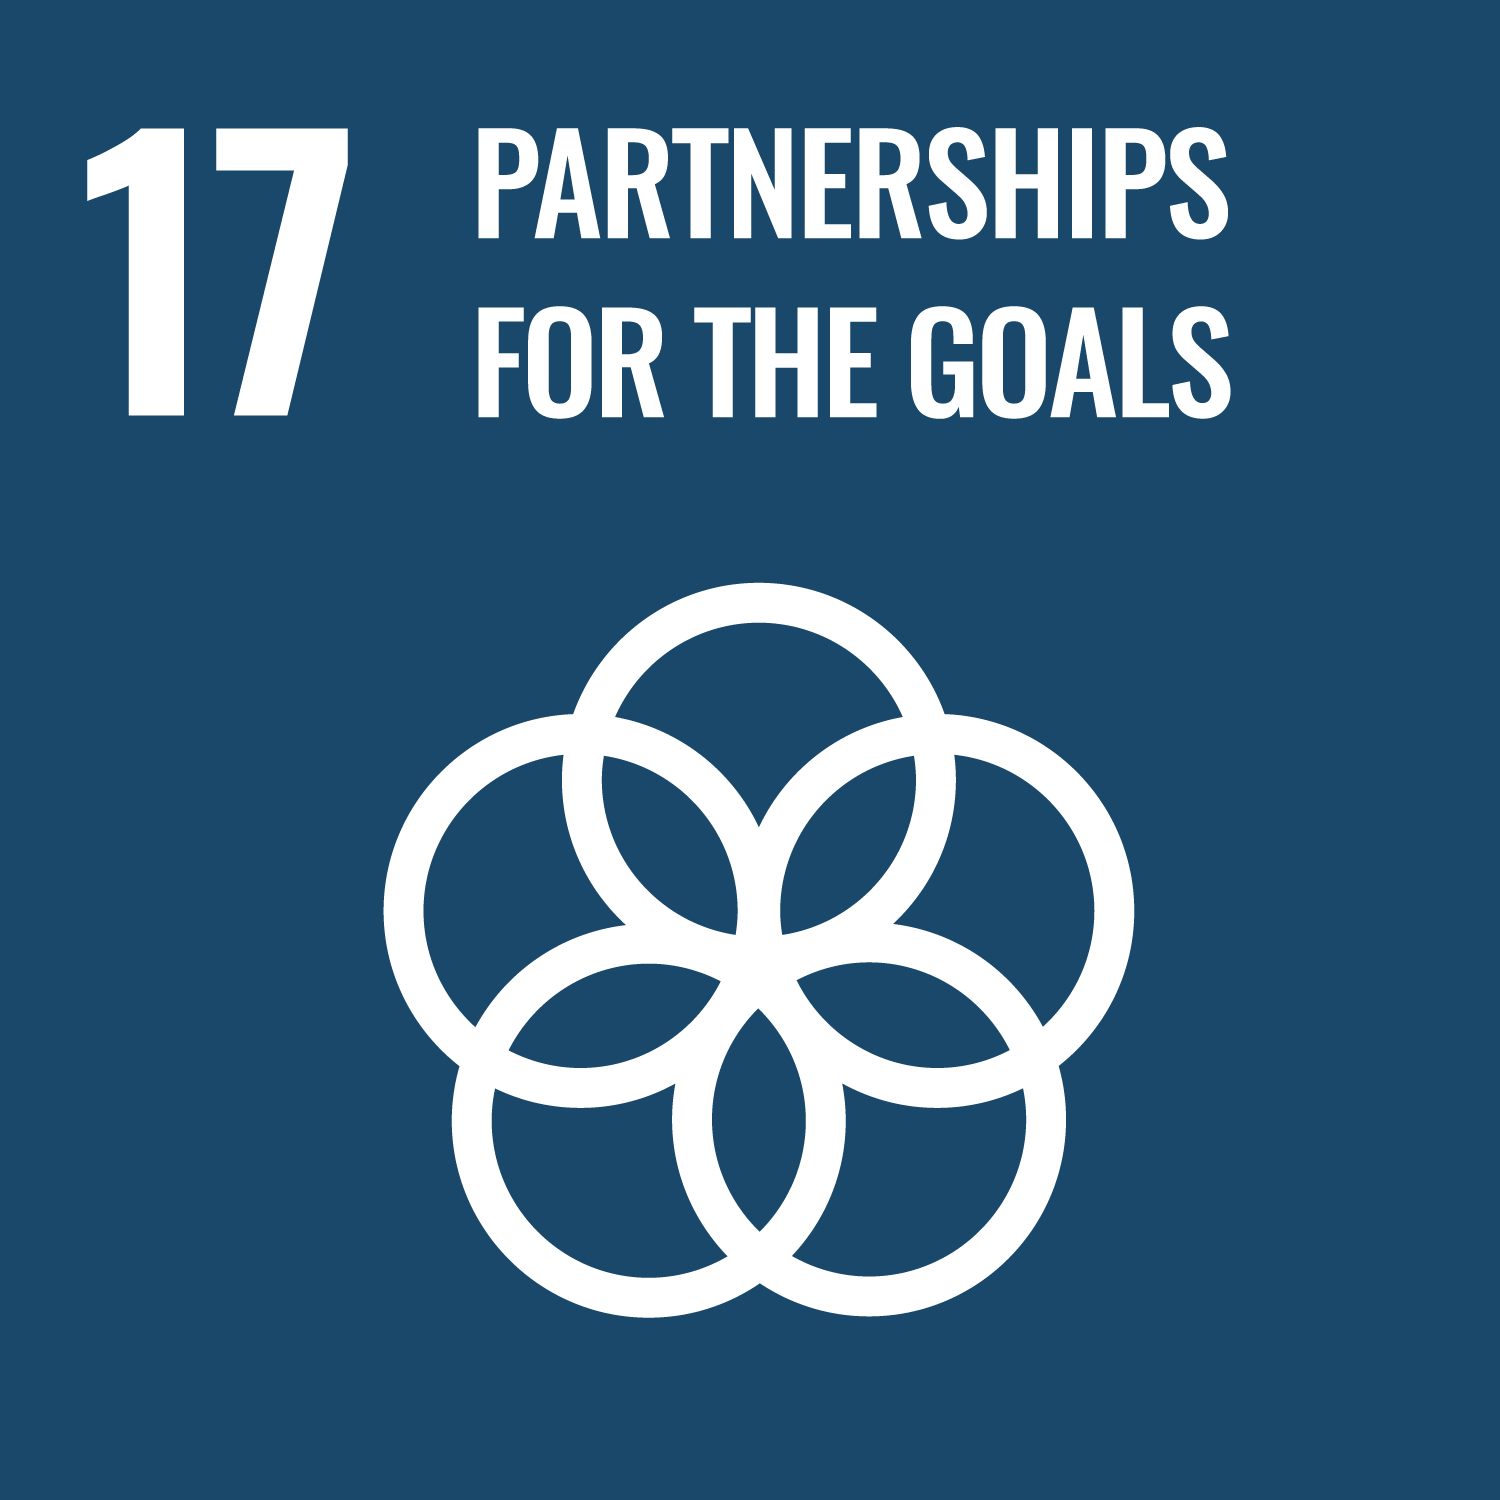 Umsetzungsmittel und globale Partnerschaft stärken – Umsetzungsmittel stärken und die globale Partnerschaft für nachhaltige Entwicklung mit neuem Leben füllen.